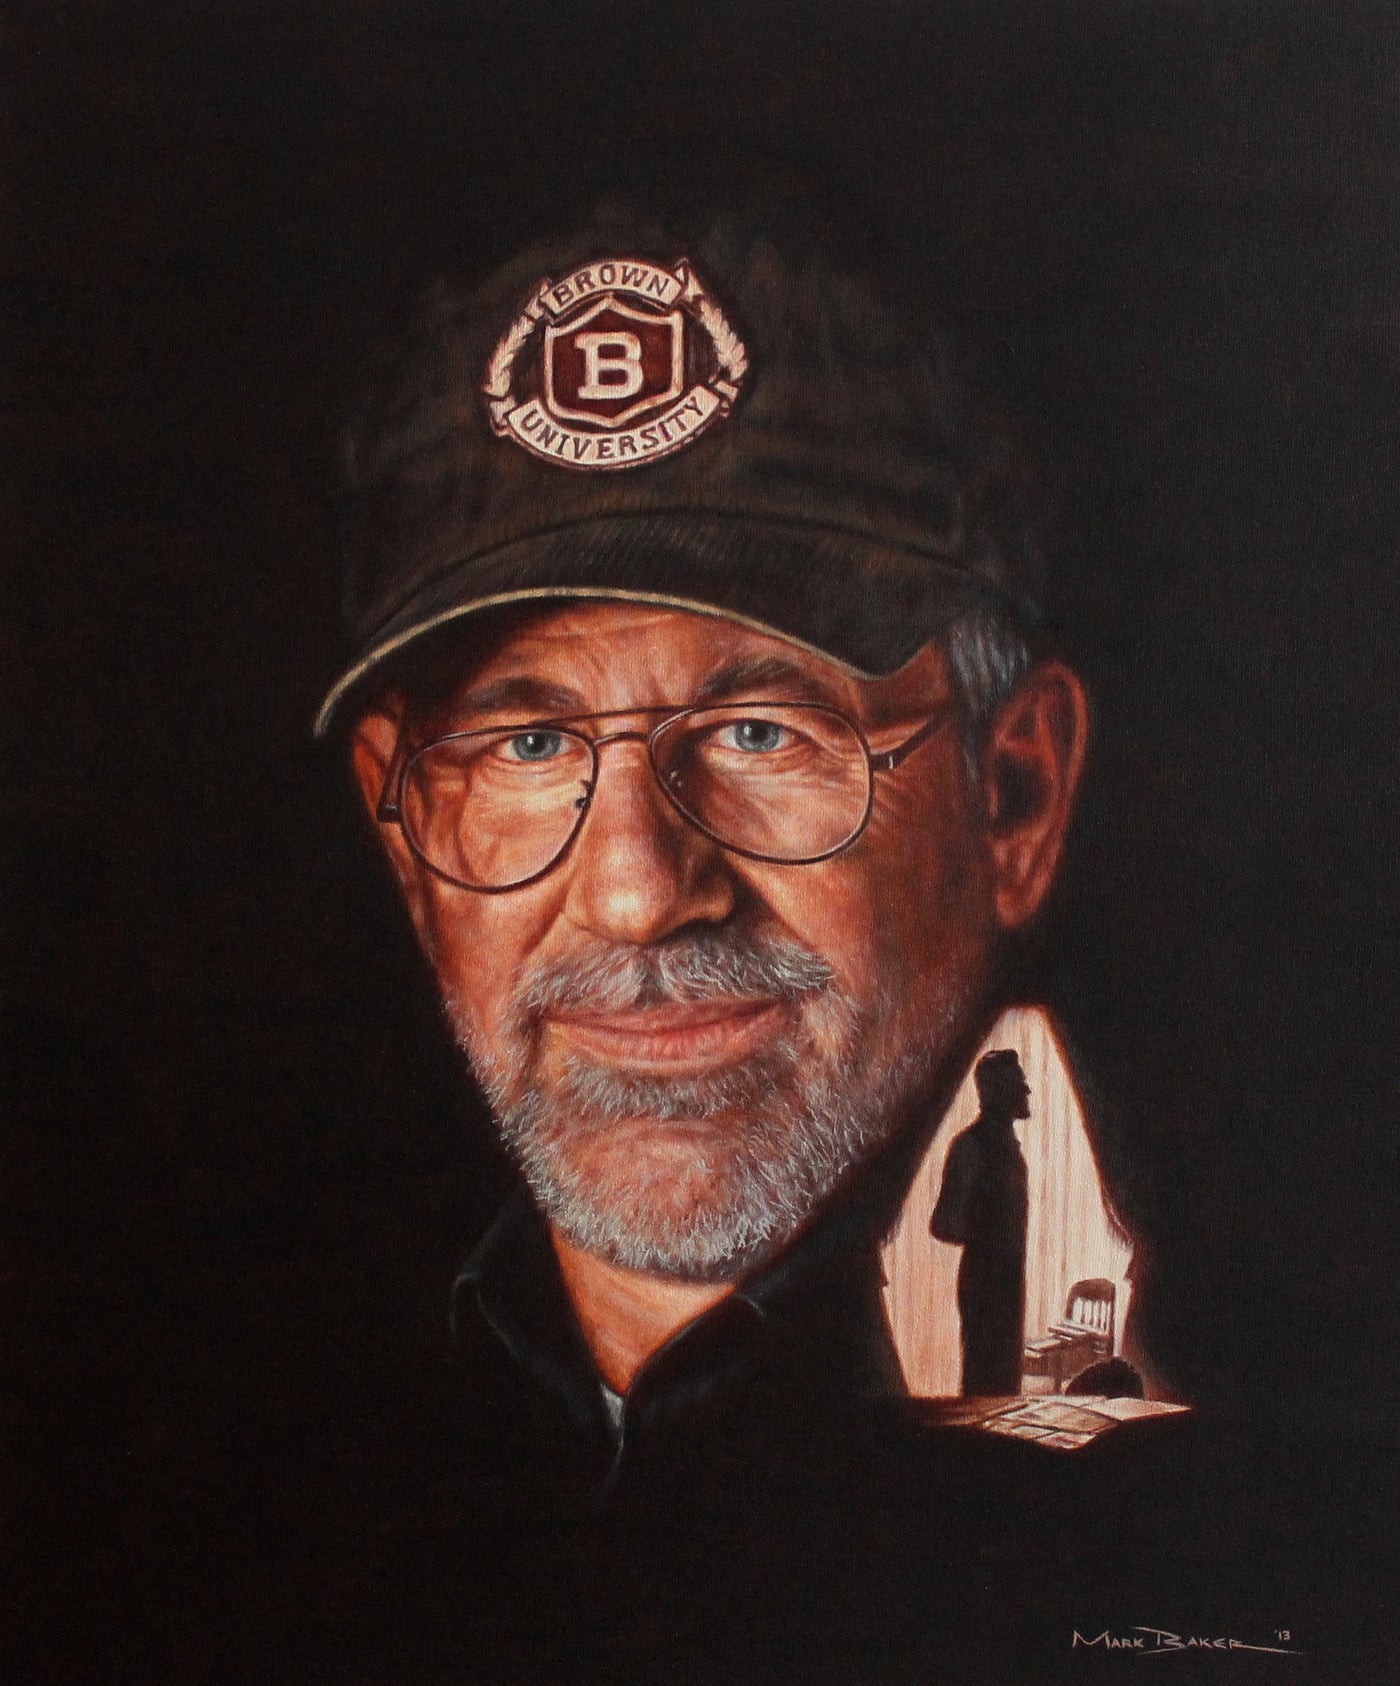 Steven Spielberg by Mark Baker - Green Gallery